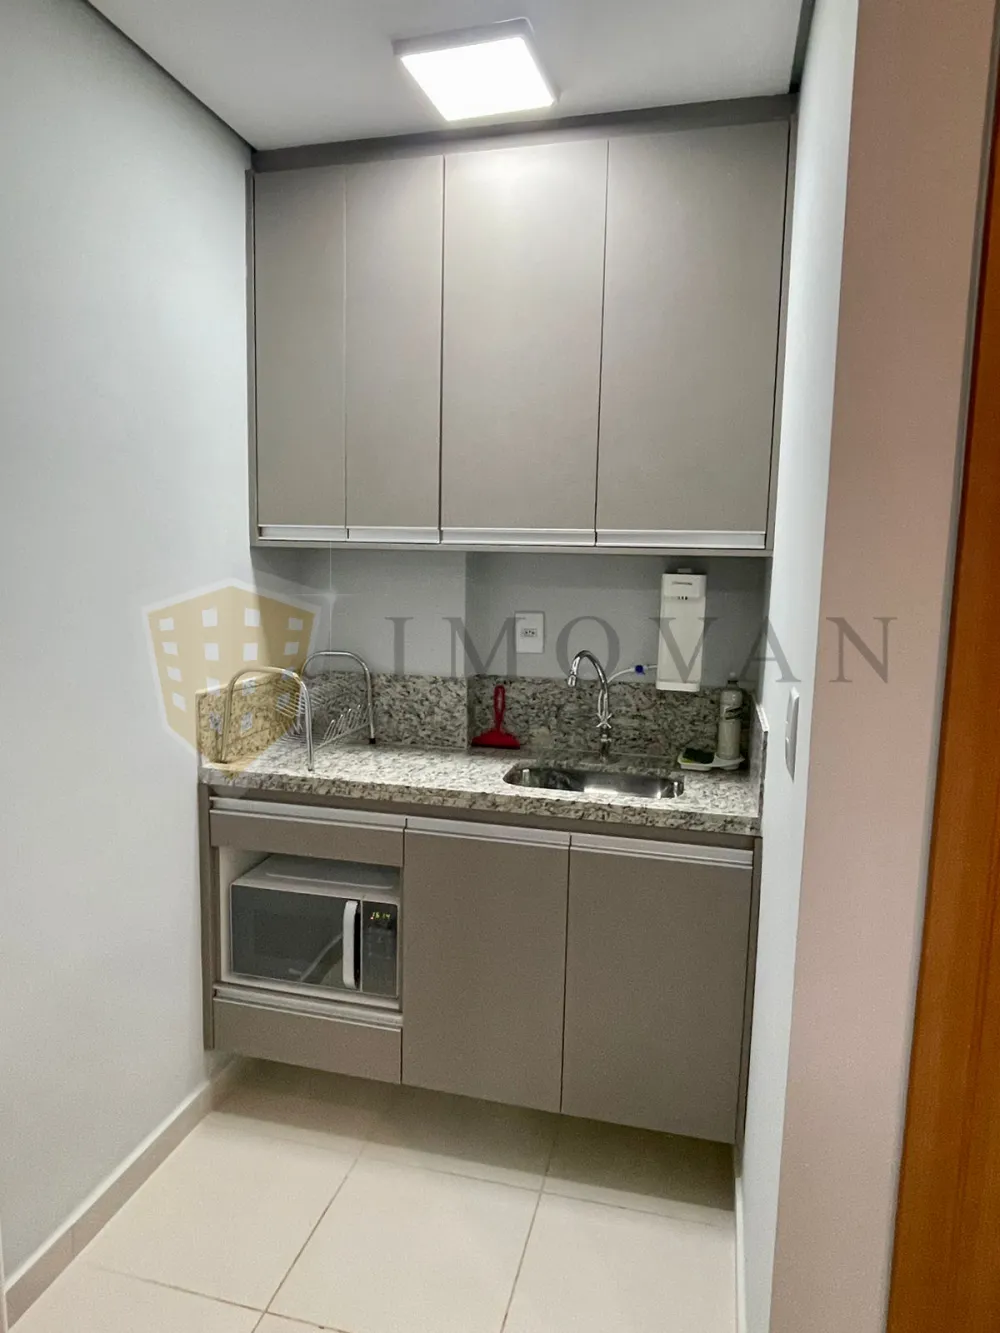 Comprar Apartamento / Kitchnet em Ribeirão Preto R$ 225.000,00 - Foto 11